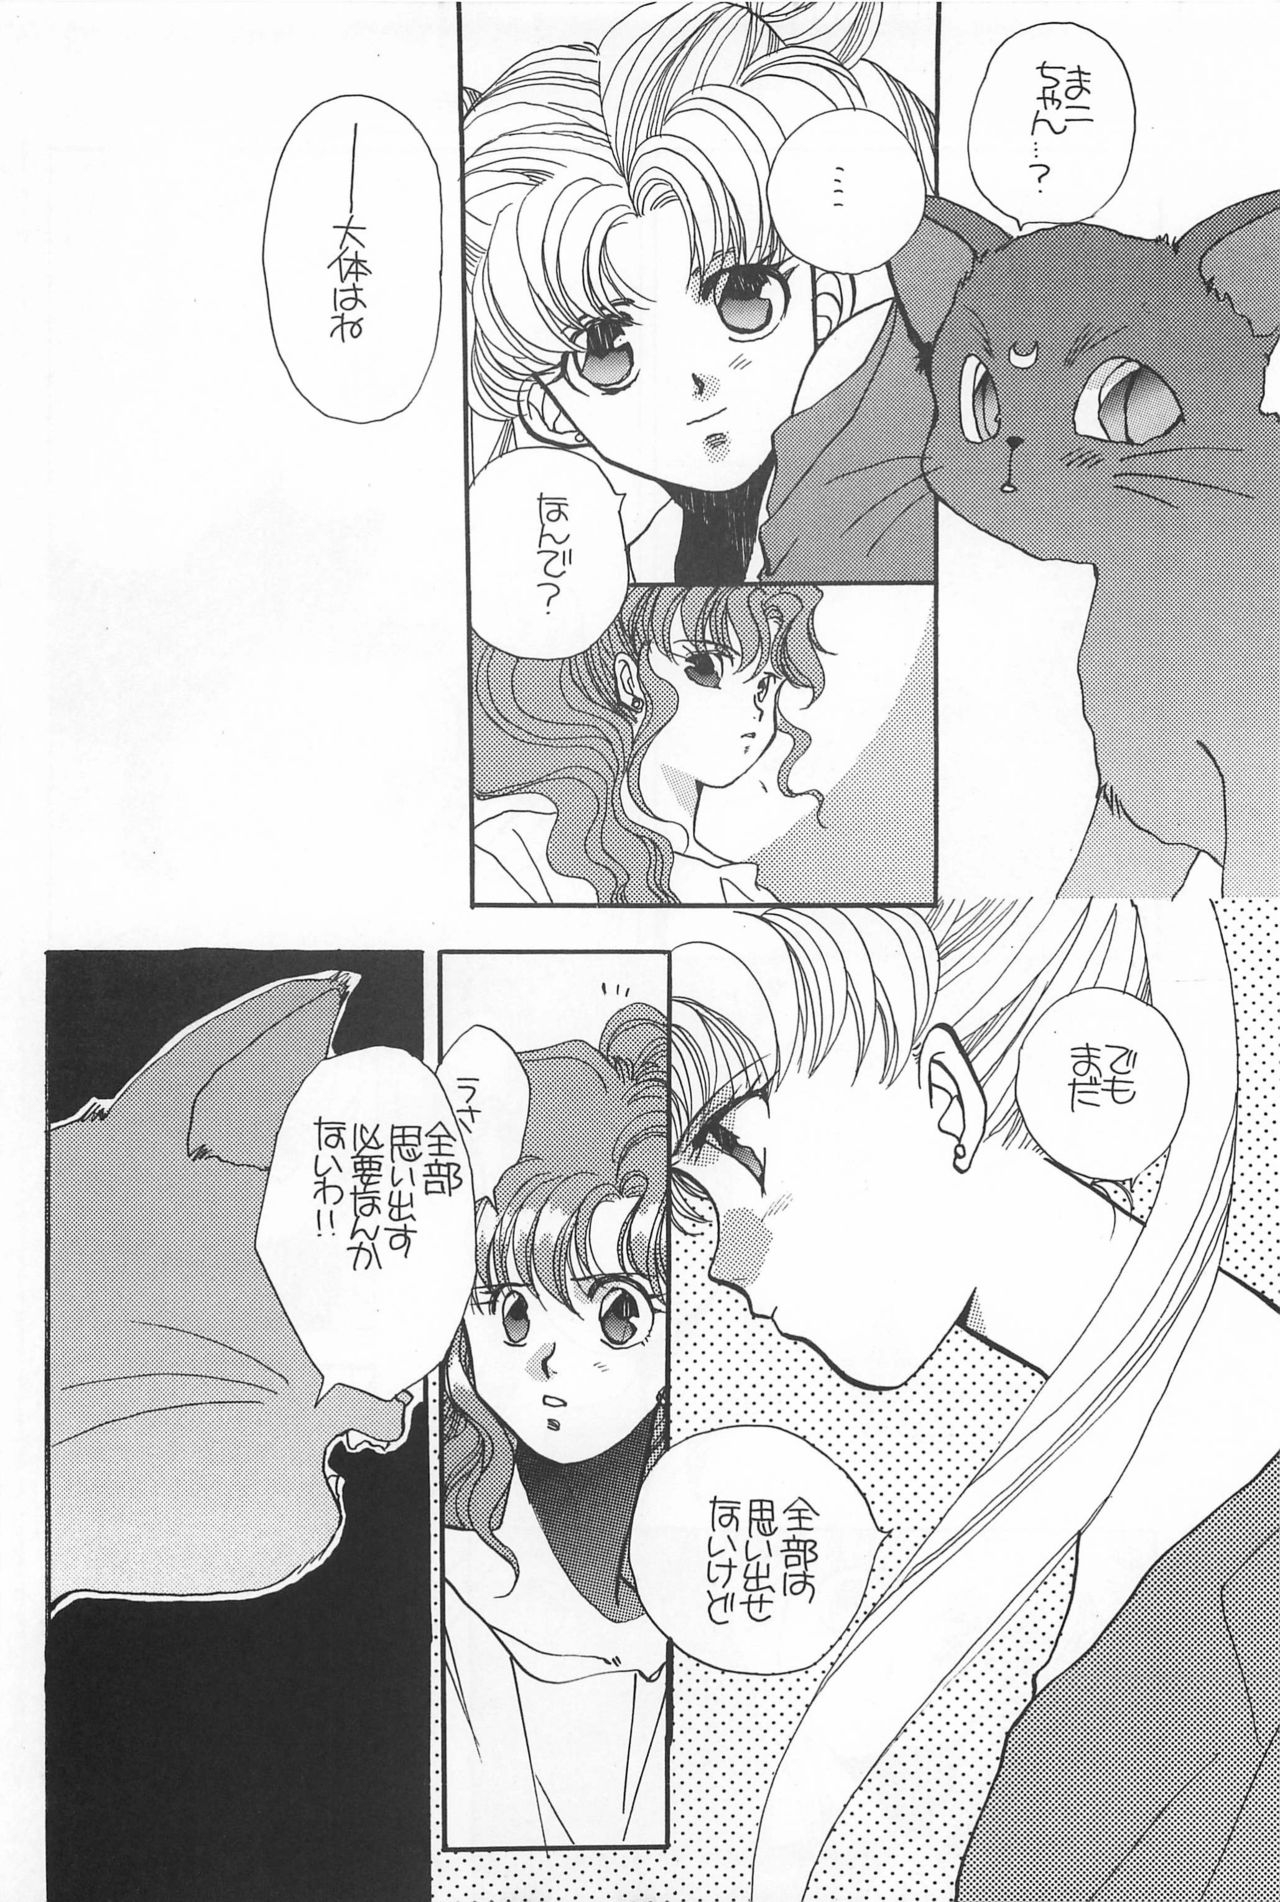 [Hello World (Muttri Moony)] Kaze no You ni Yume no You ni - Sailor Moon Collection (Sailor Moon) 155